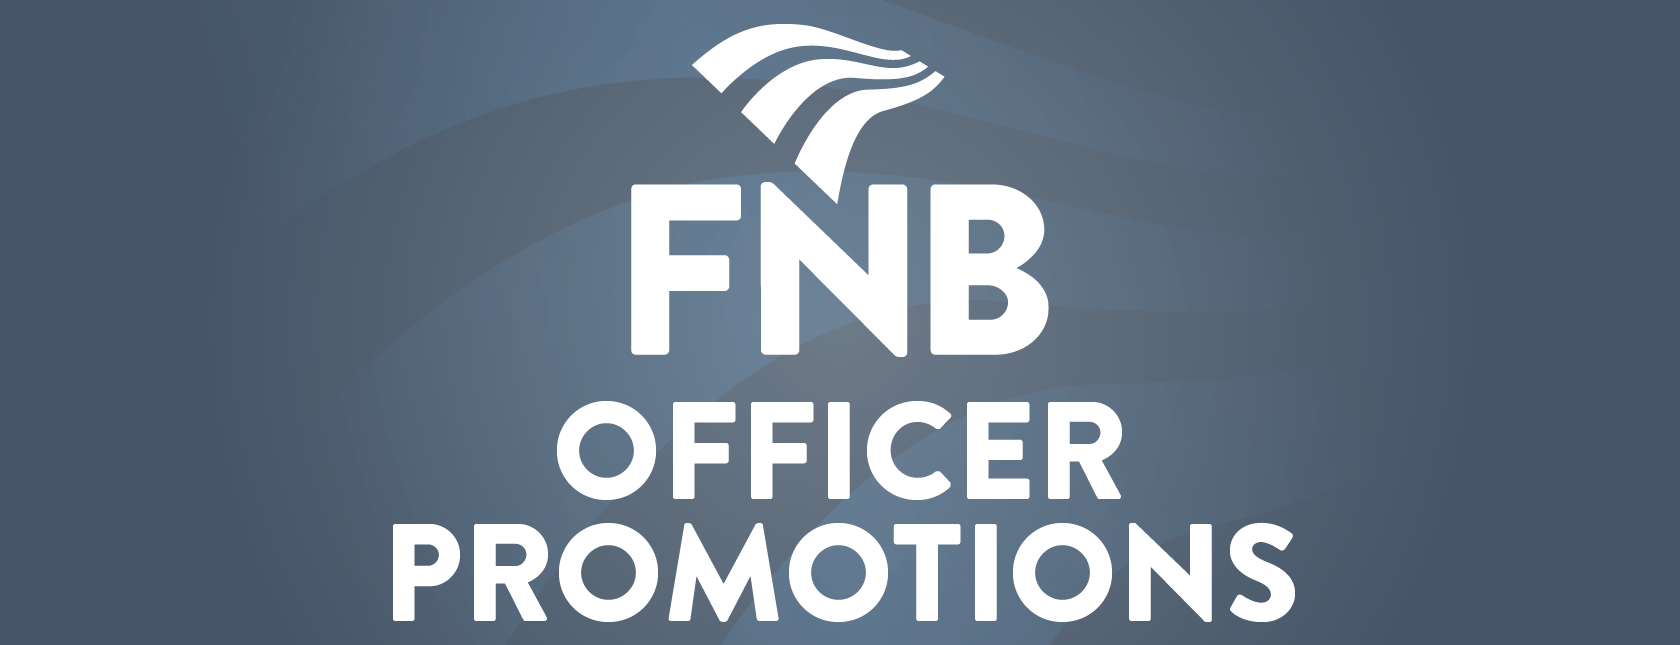 FNB Officer Promotion FNB Officer Promotion